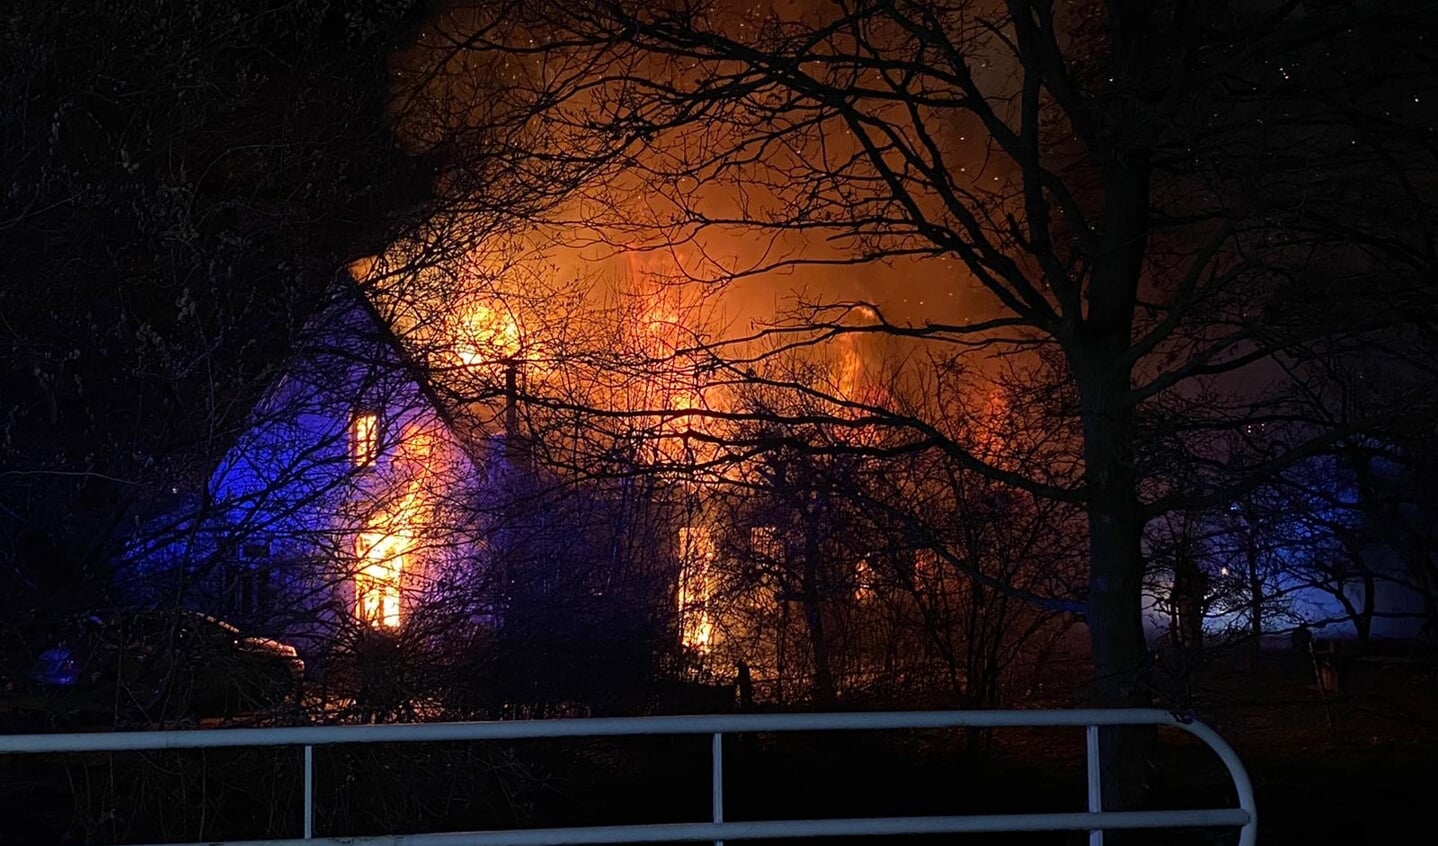 Felle uitslaande brand verwoest woonboerderij